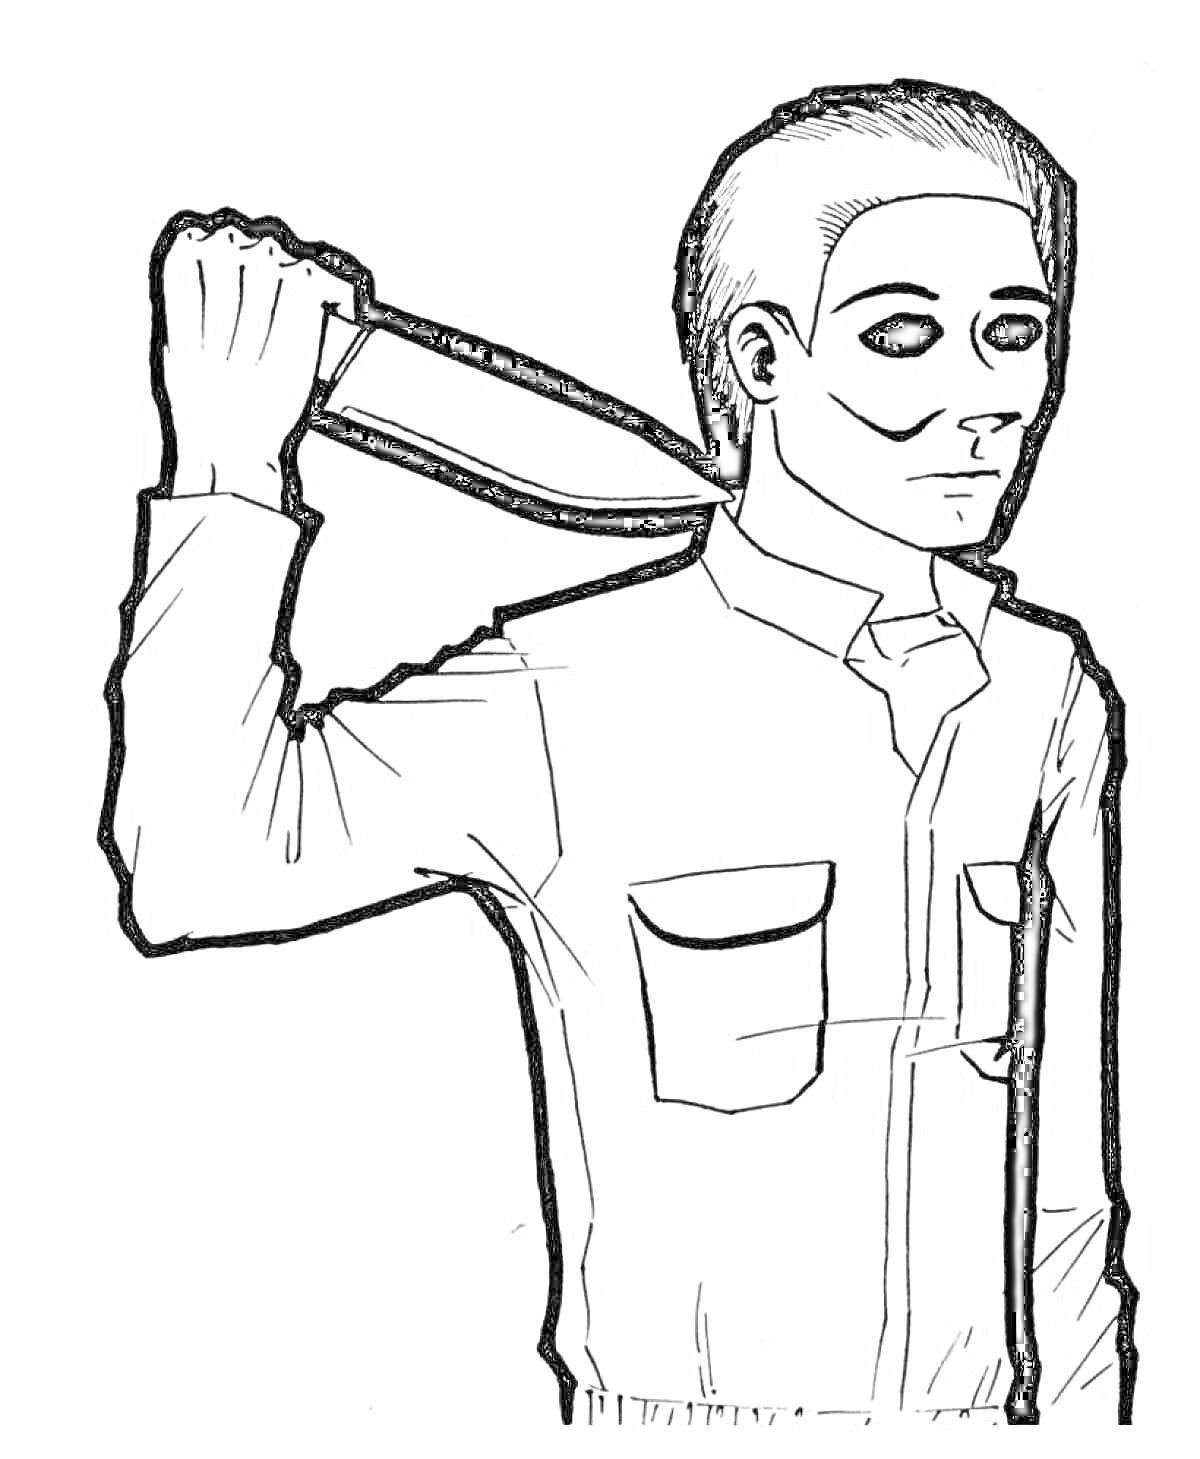 Человек в маске и рубашке держит нож у шеи